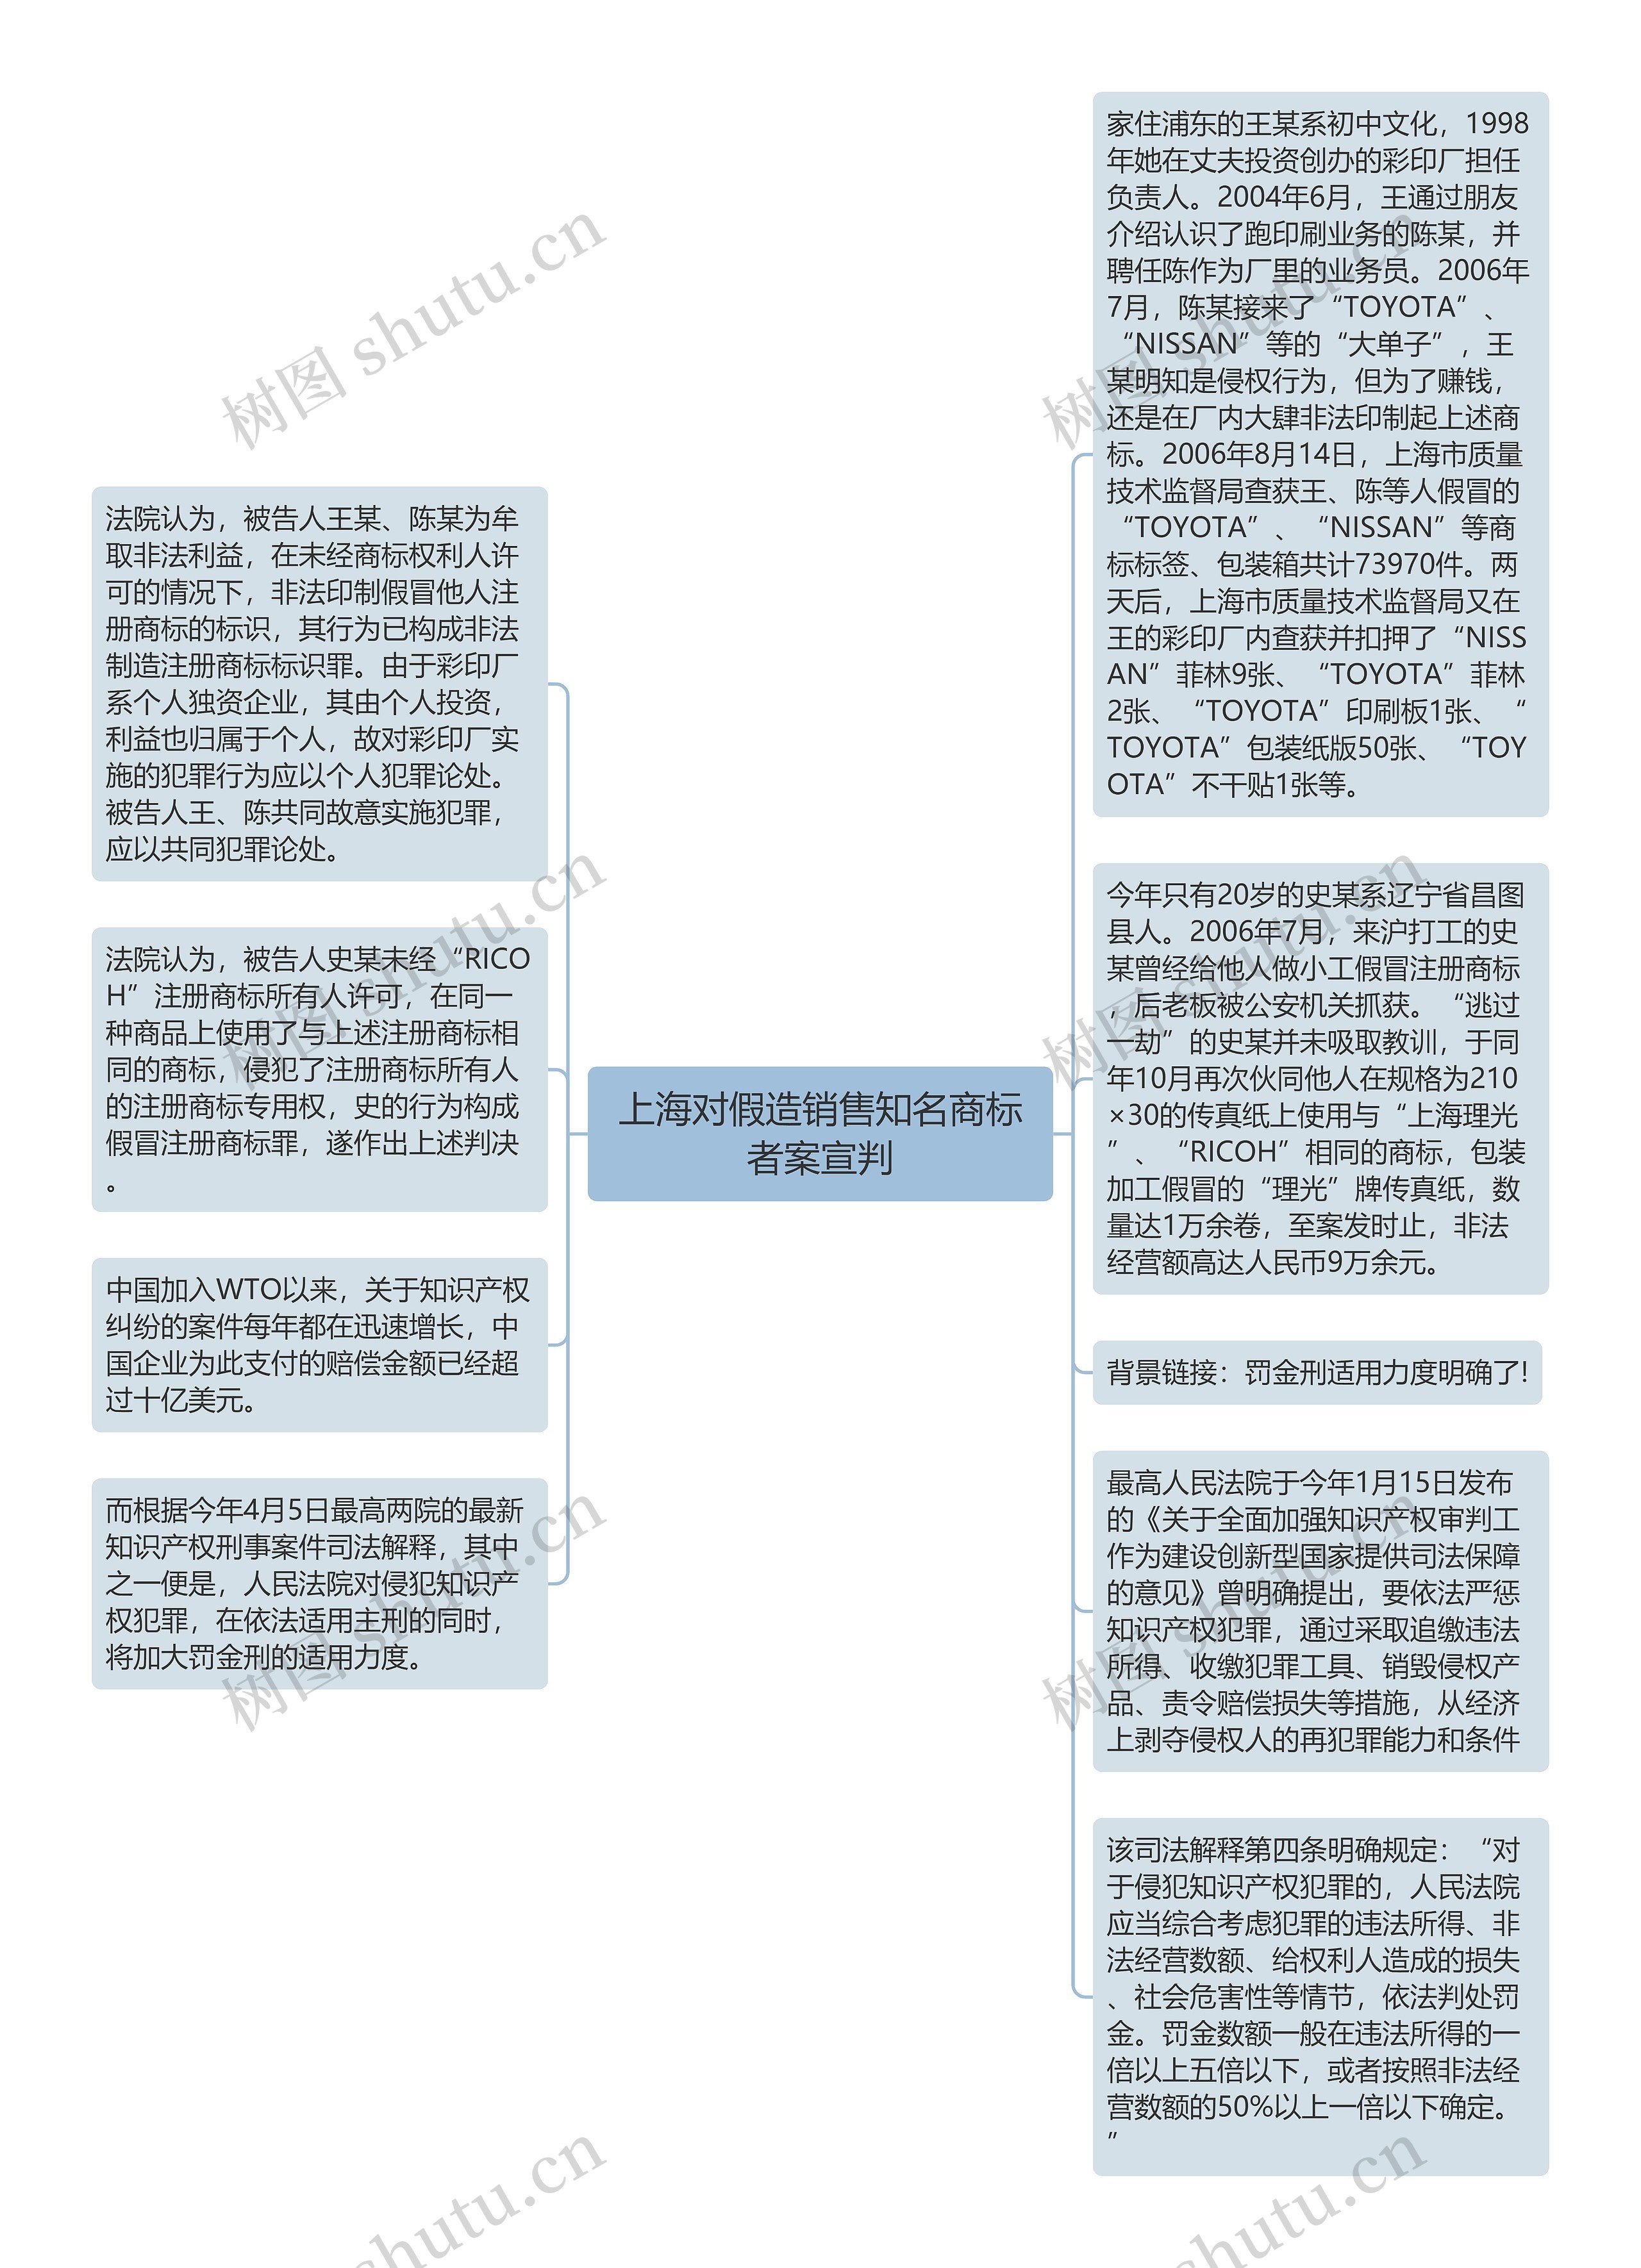 上海对假造销售知名商标者案宣判